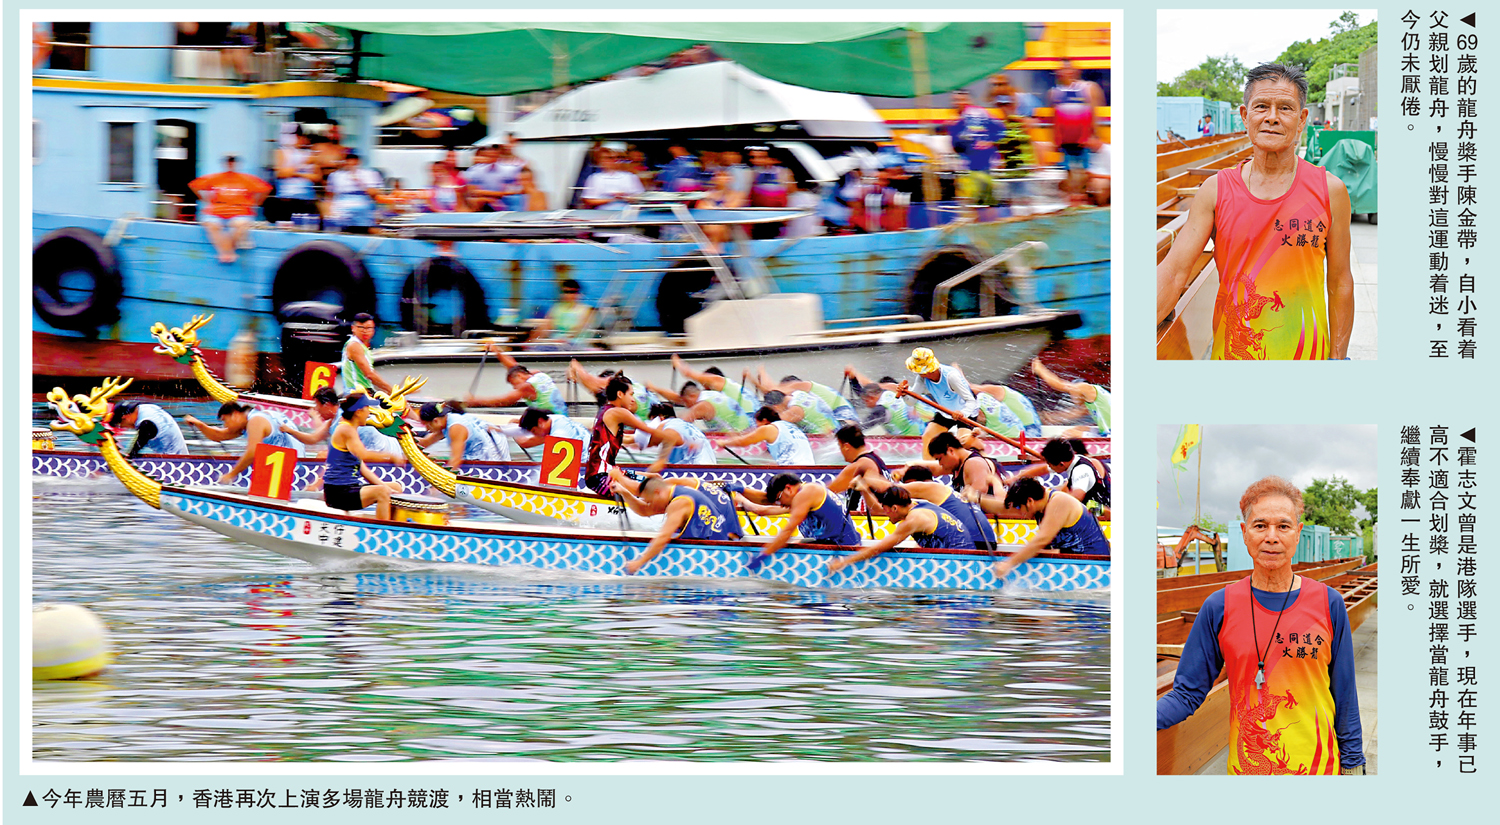 　　左圖：今年農曆五月，香港再次上演多場龍舟競渡，相當熱鬧。右上圖：69歲的龍舟槳手陳金帶，自小看着父親划龍舟，慢慢對這運動着迷，至今仍未厭倦。右下圖：霍志文曾是港隊選手，現在年事已高不適合划槳，就選擇當龍舟鼓手，繼續奉獻一生所愛。